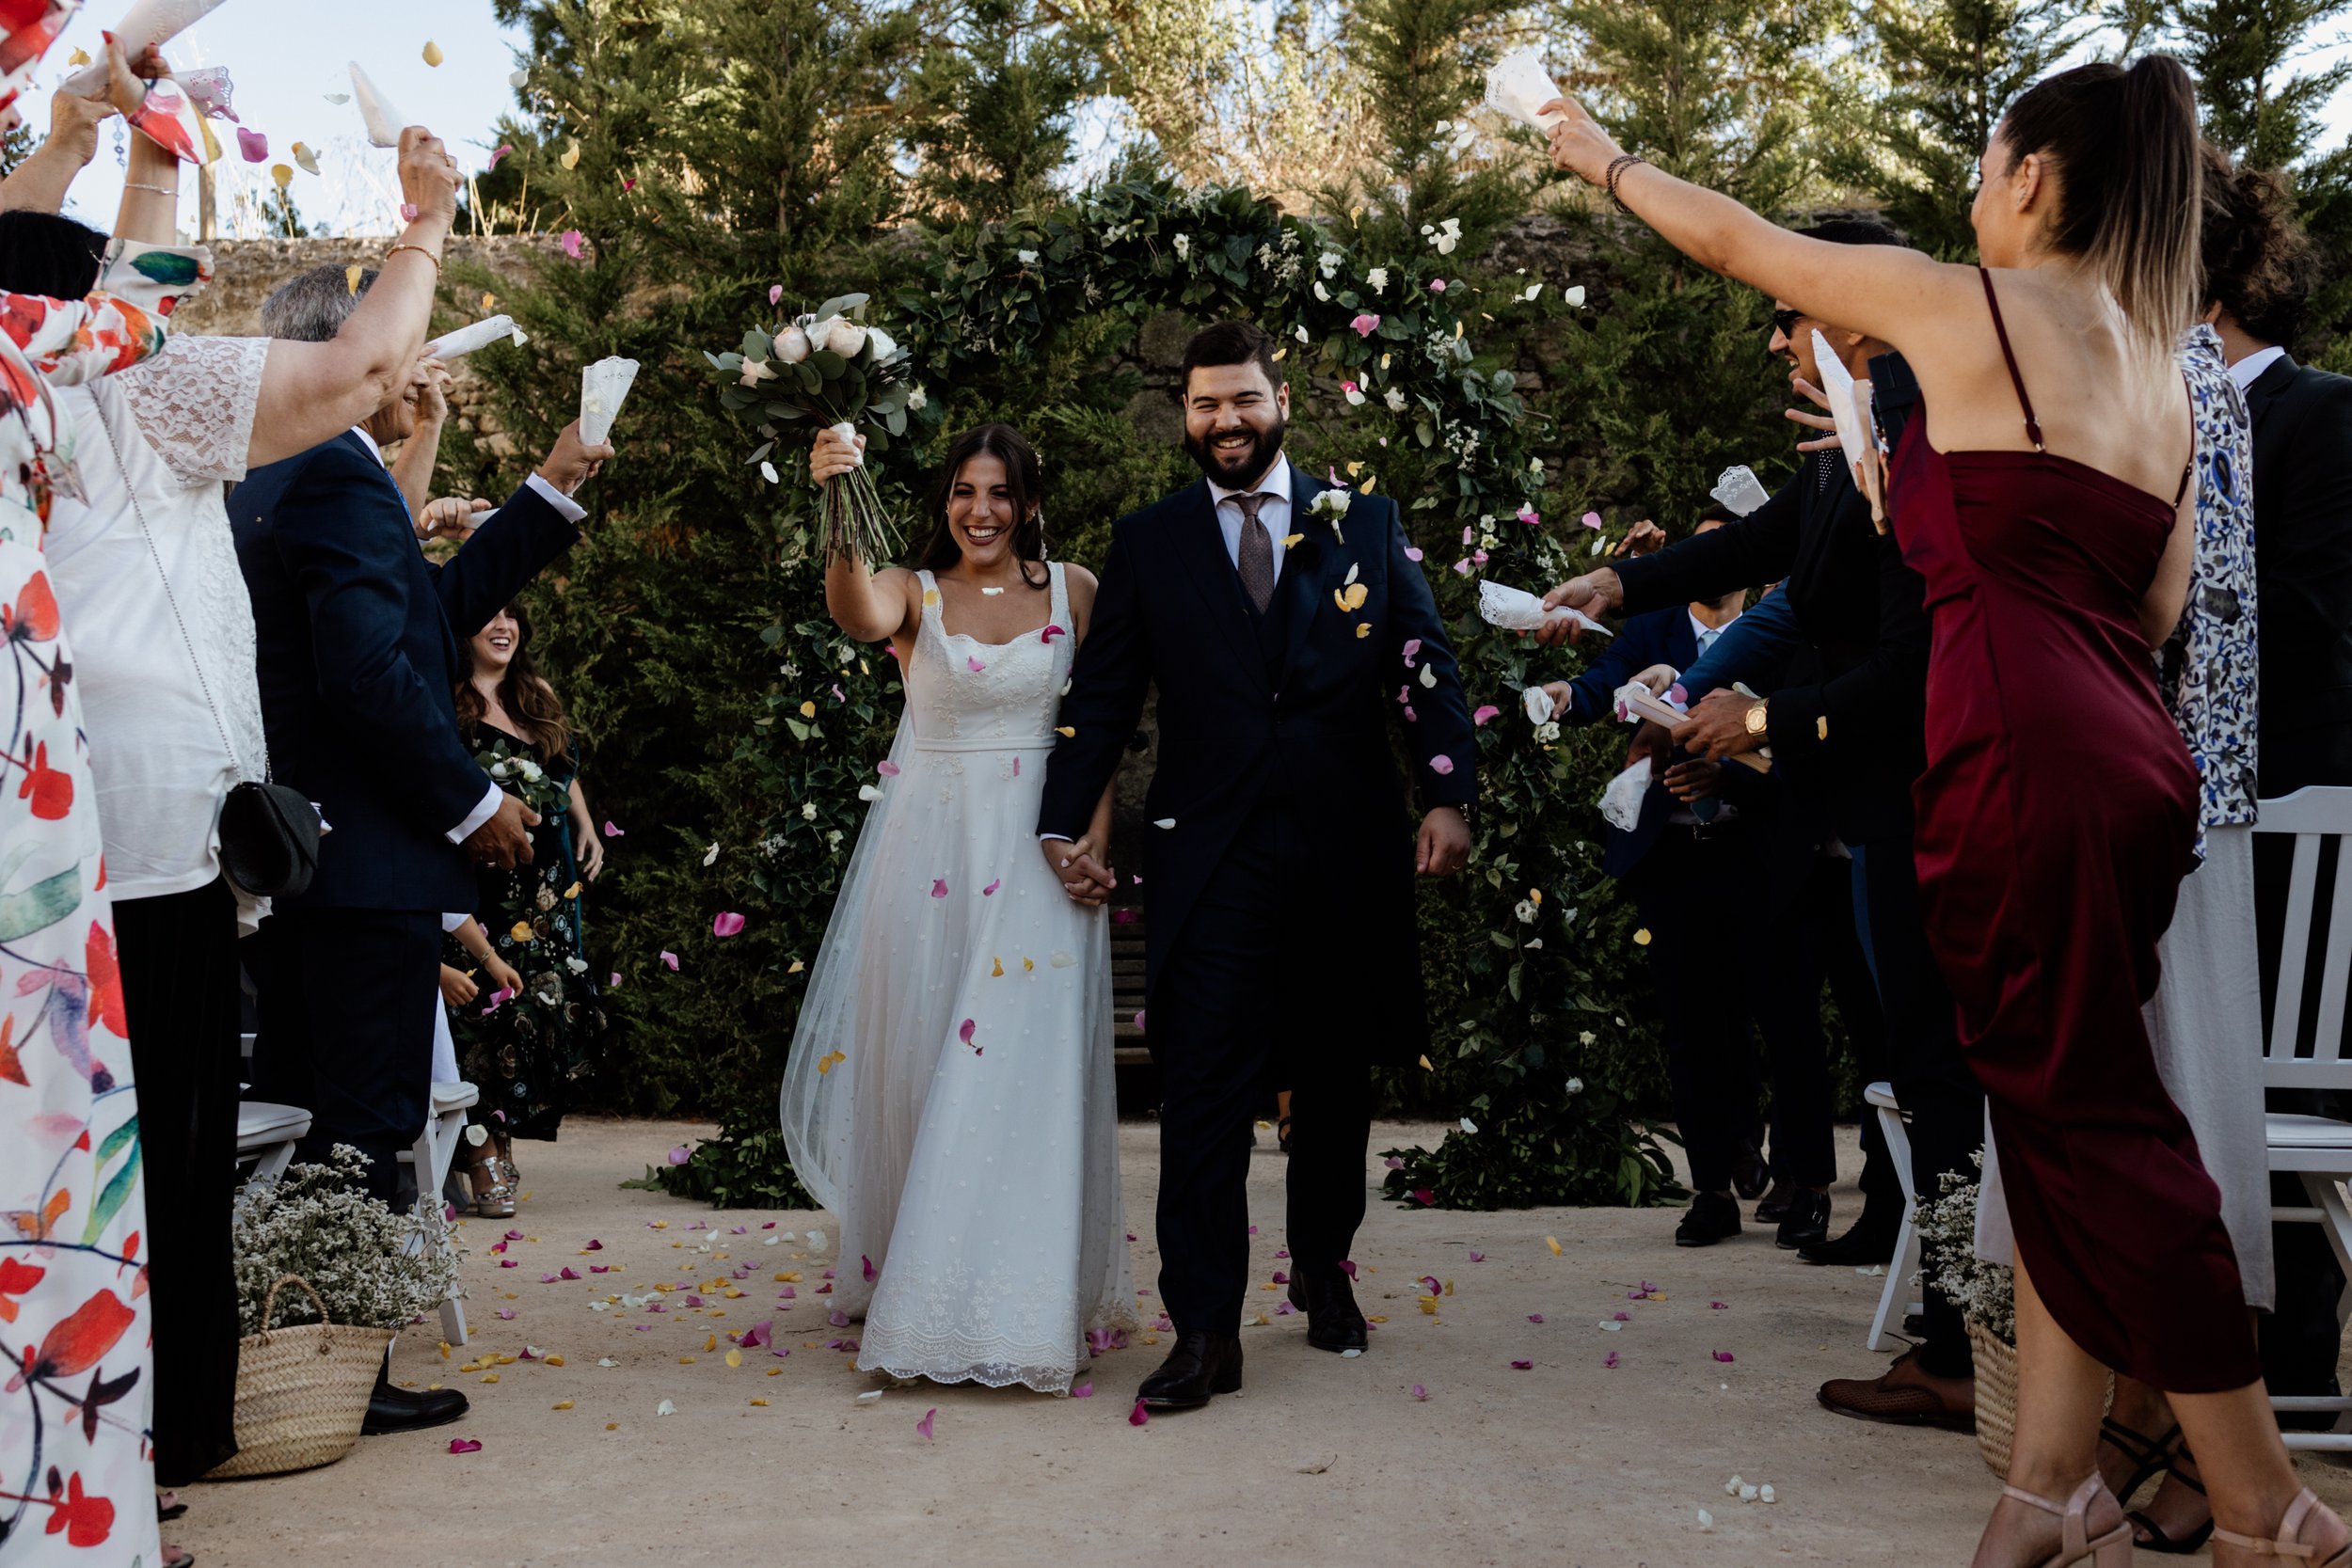 Tania Carvalho Destination Wedding In Solar de Pancas Casamento